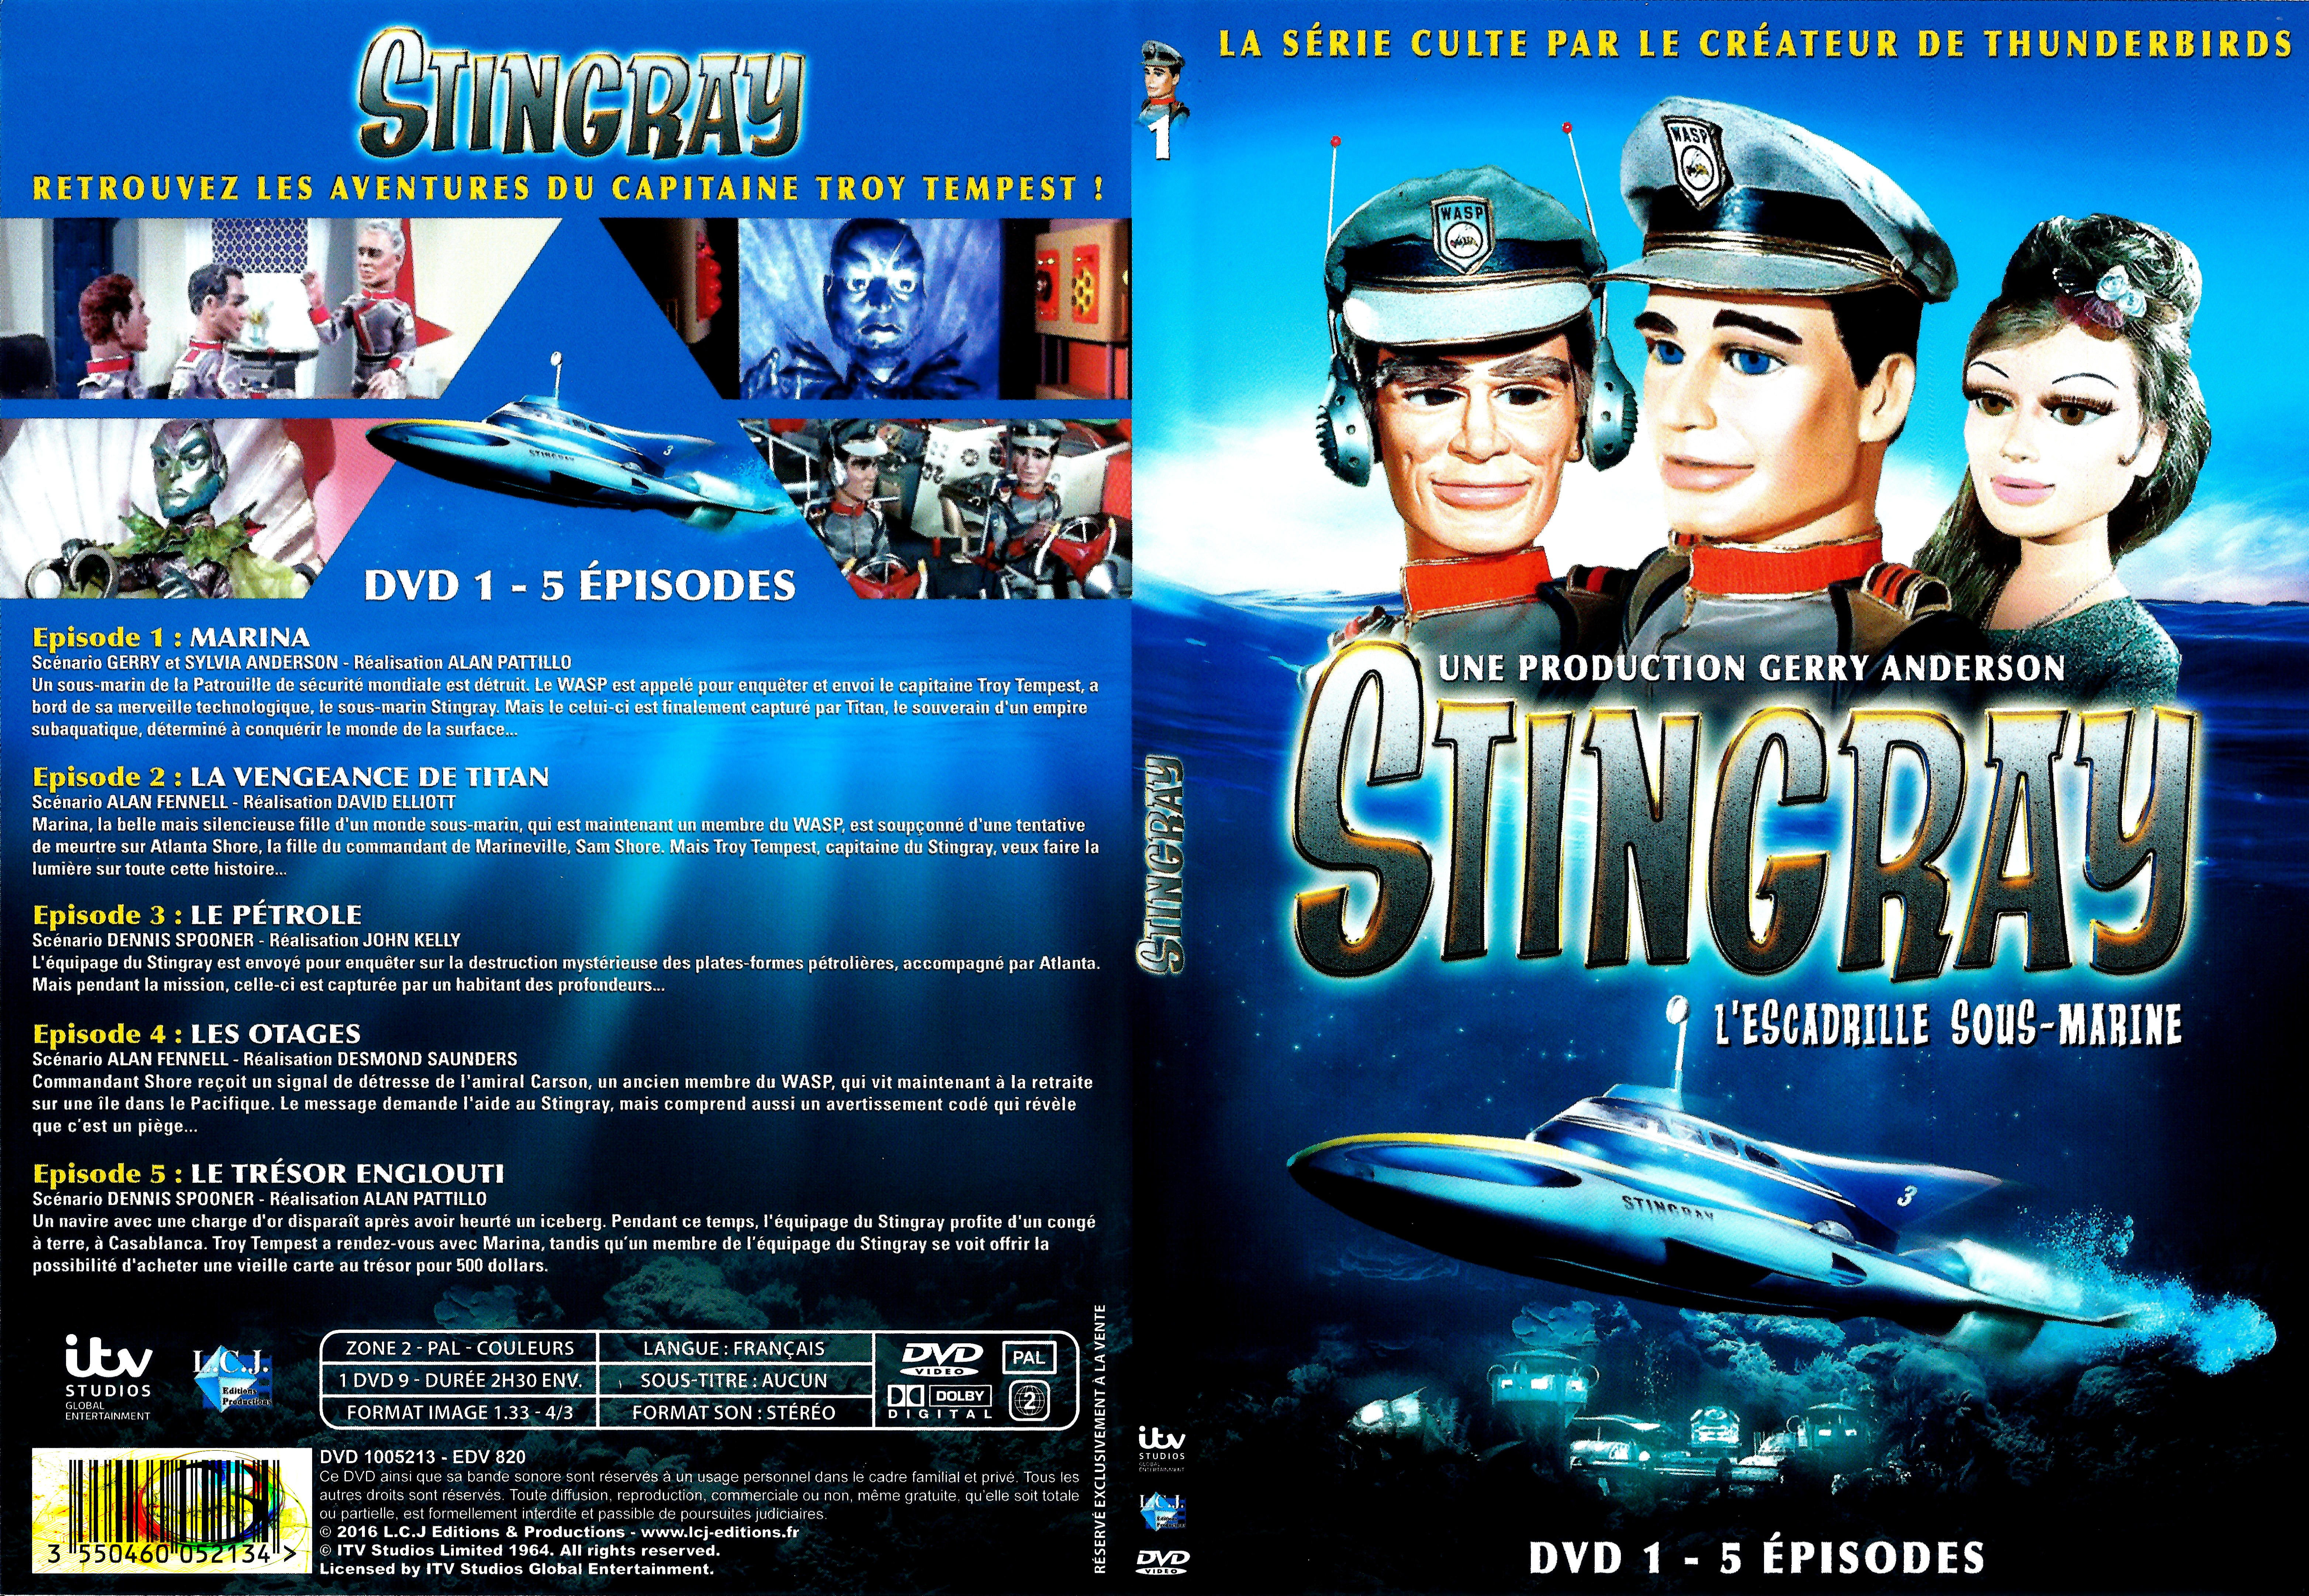 Jaquette DVD Stingray Saison 1 DVD 1